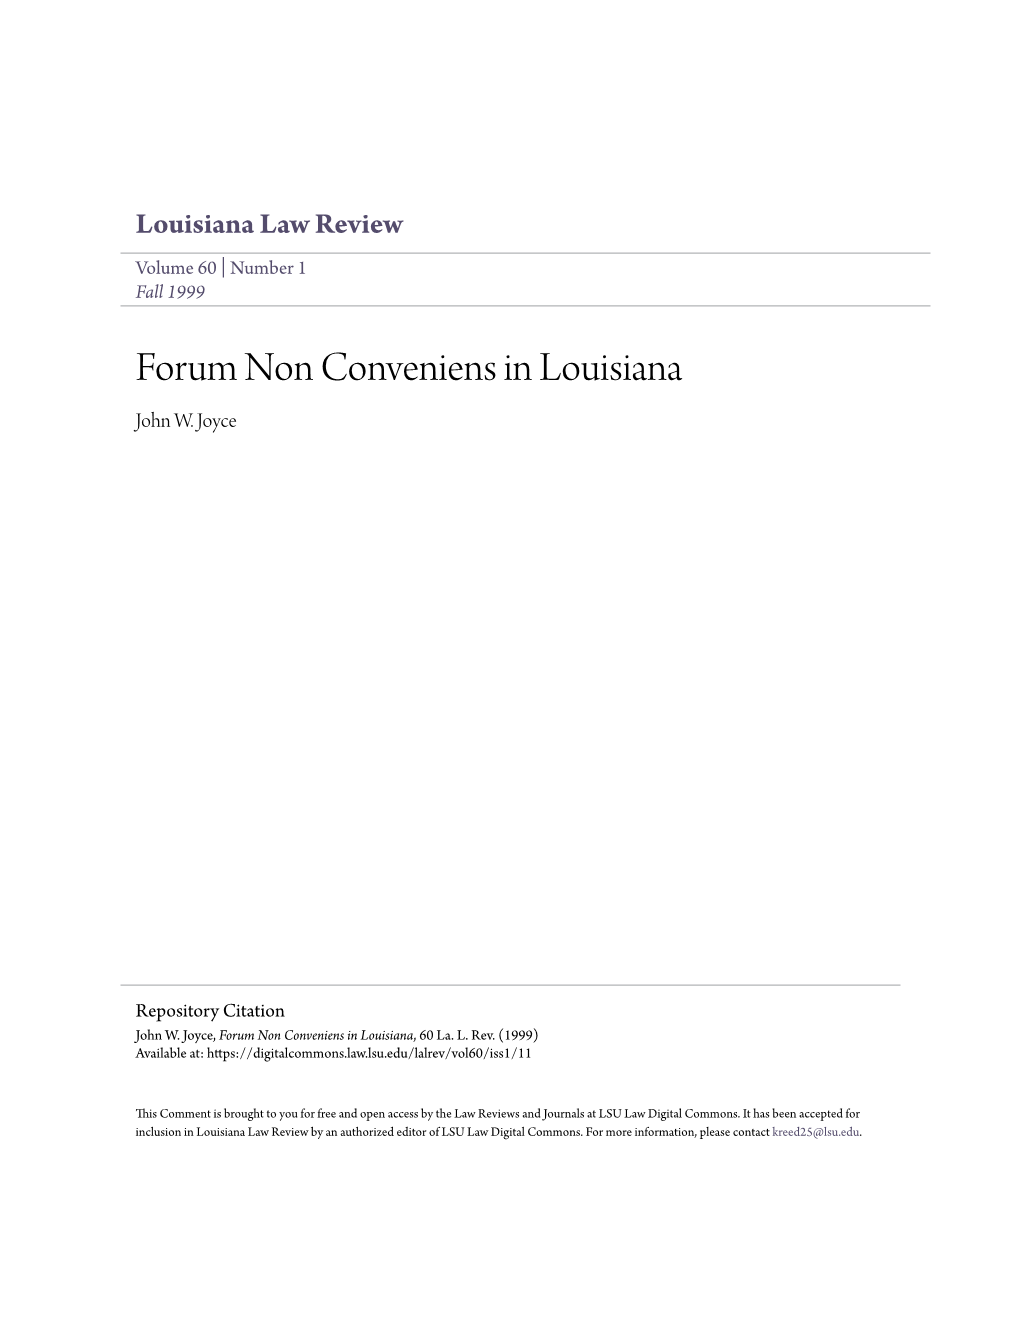 Forum Non Conveniens in Louisiana John W